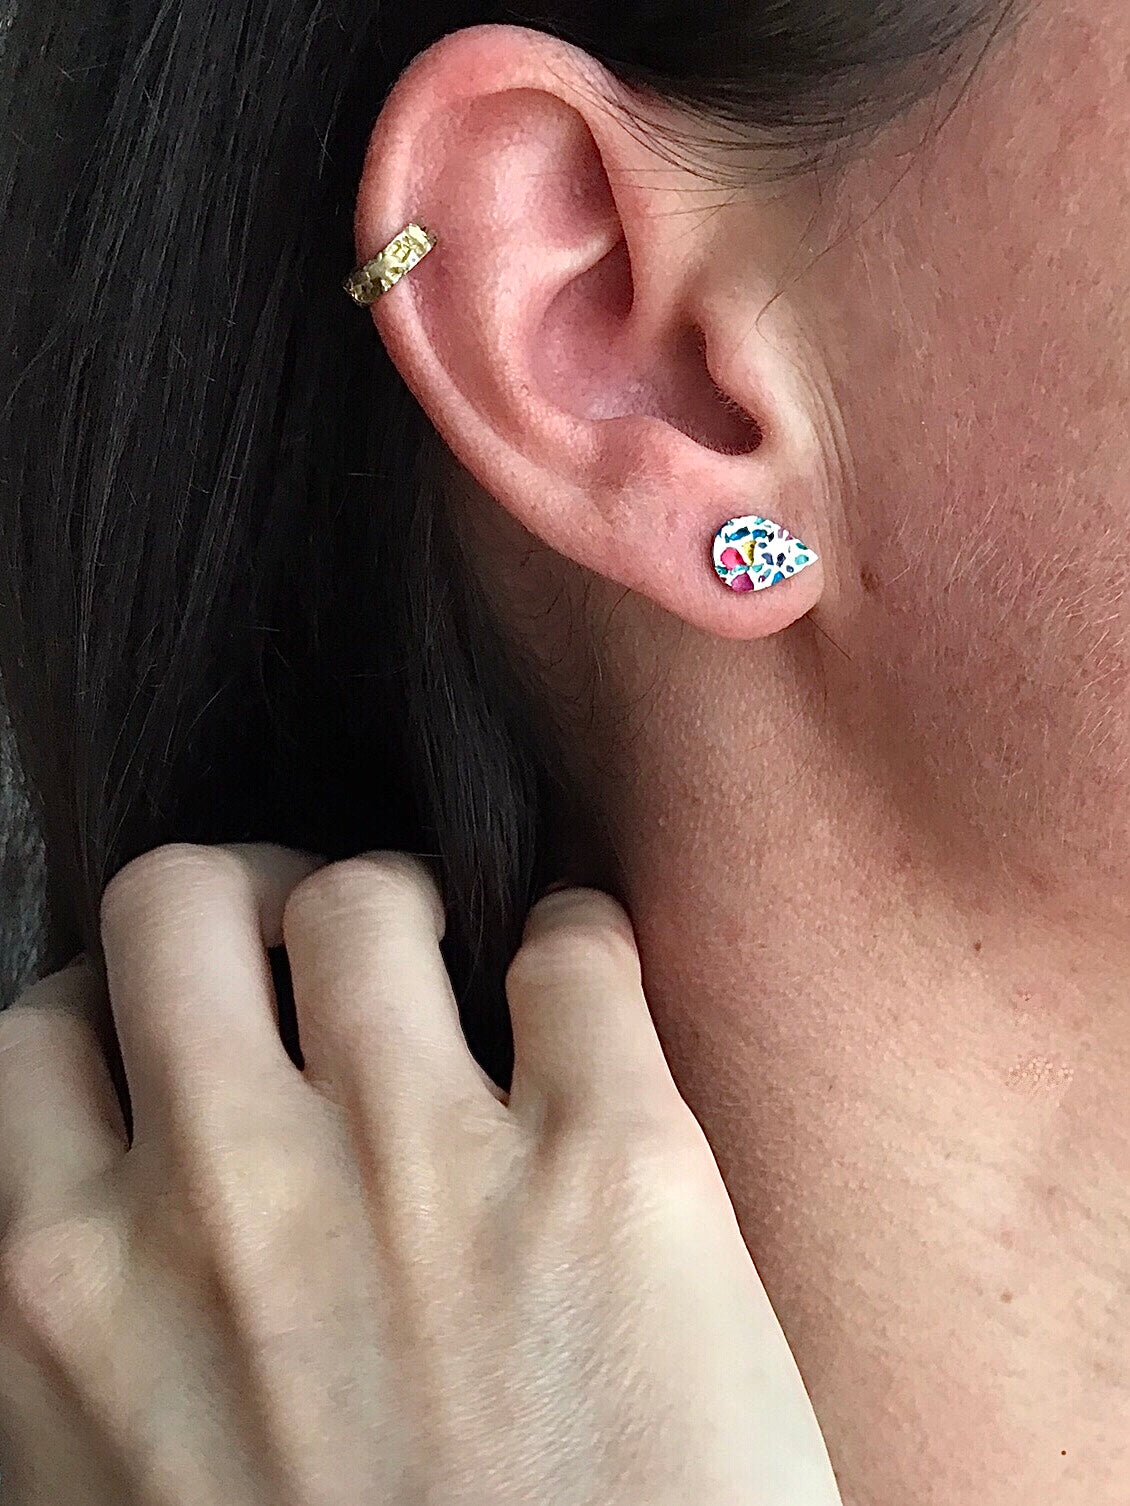 Mini Drop Earrings